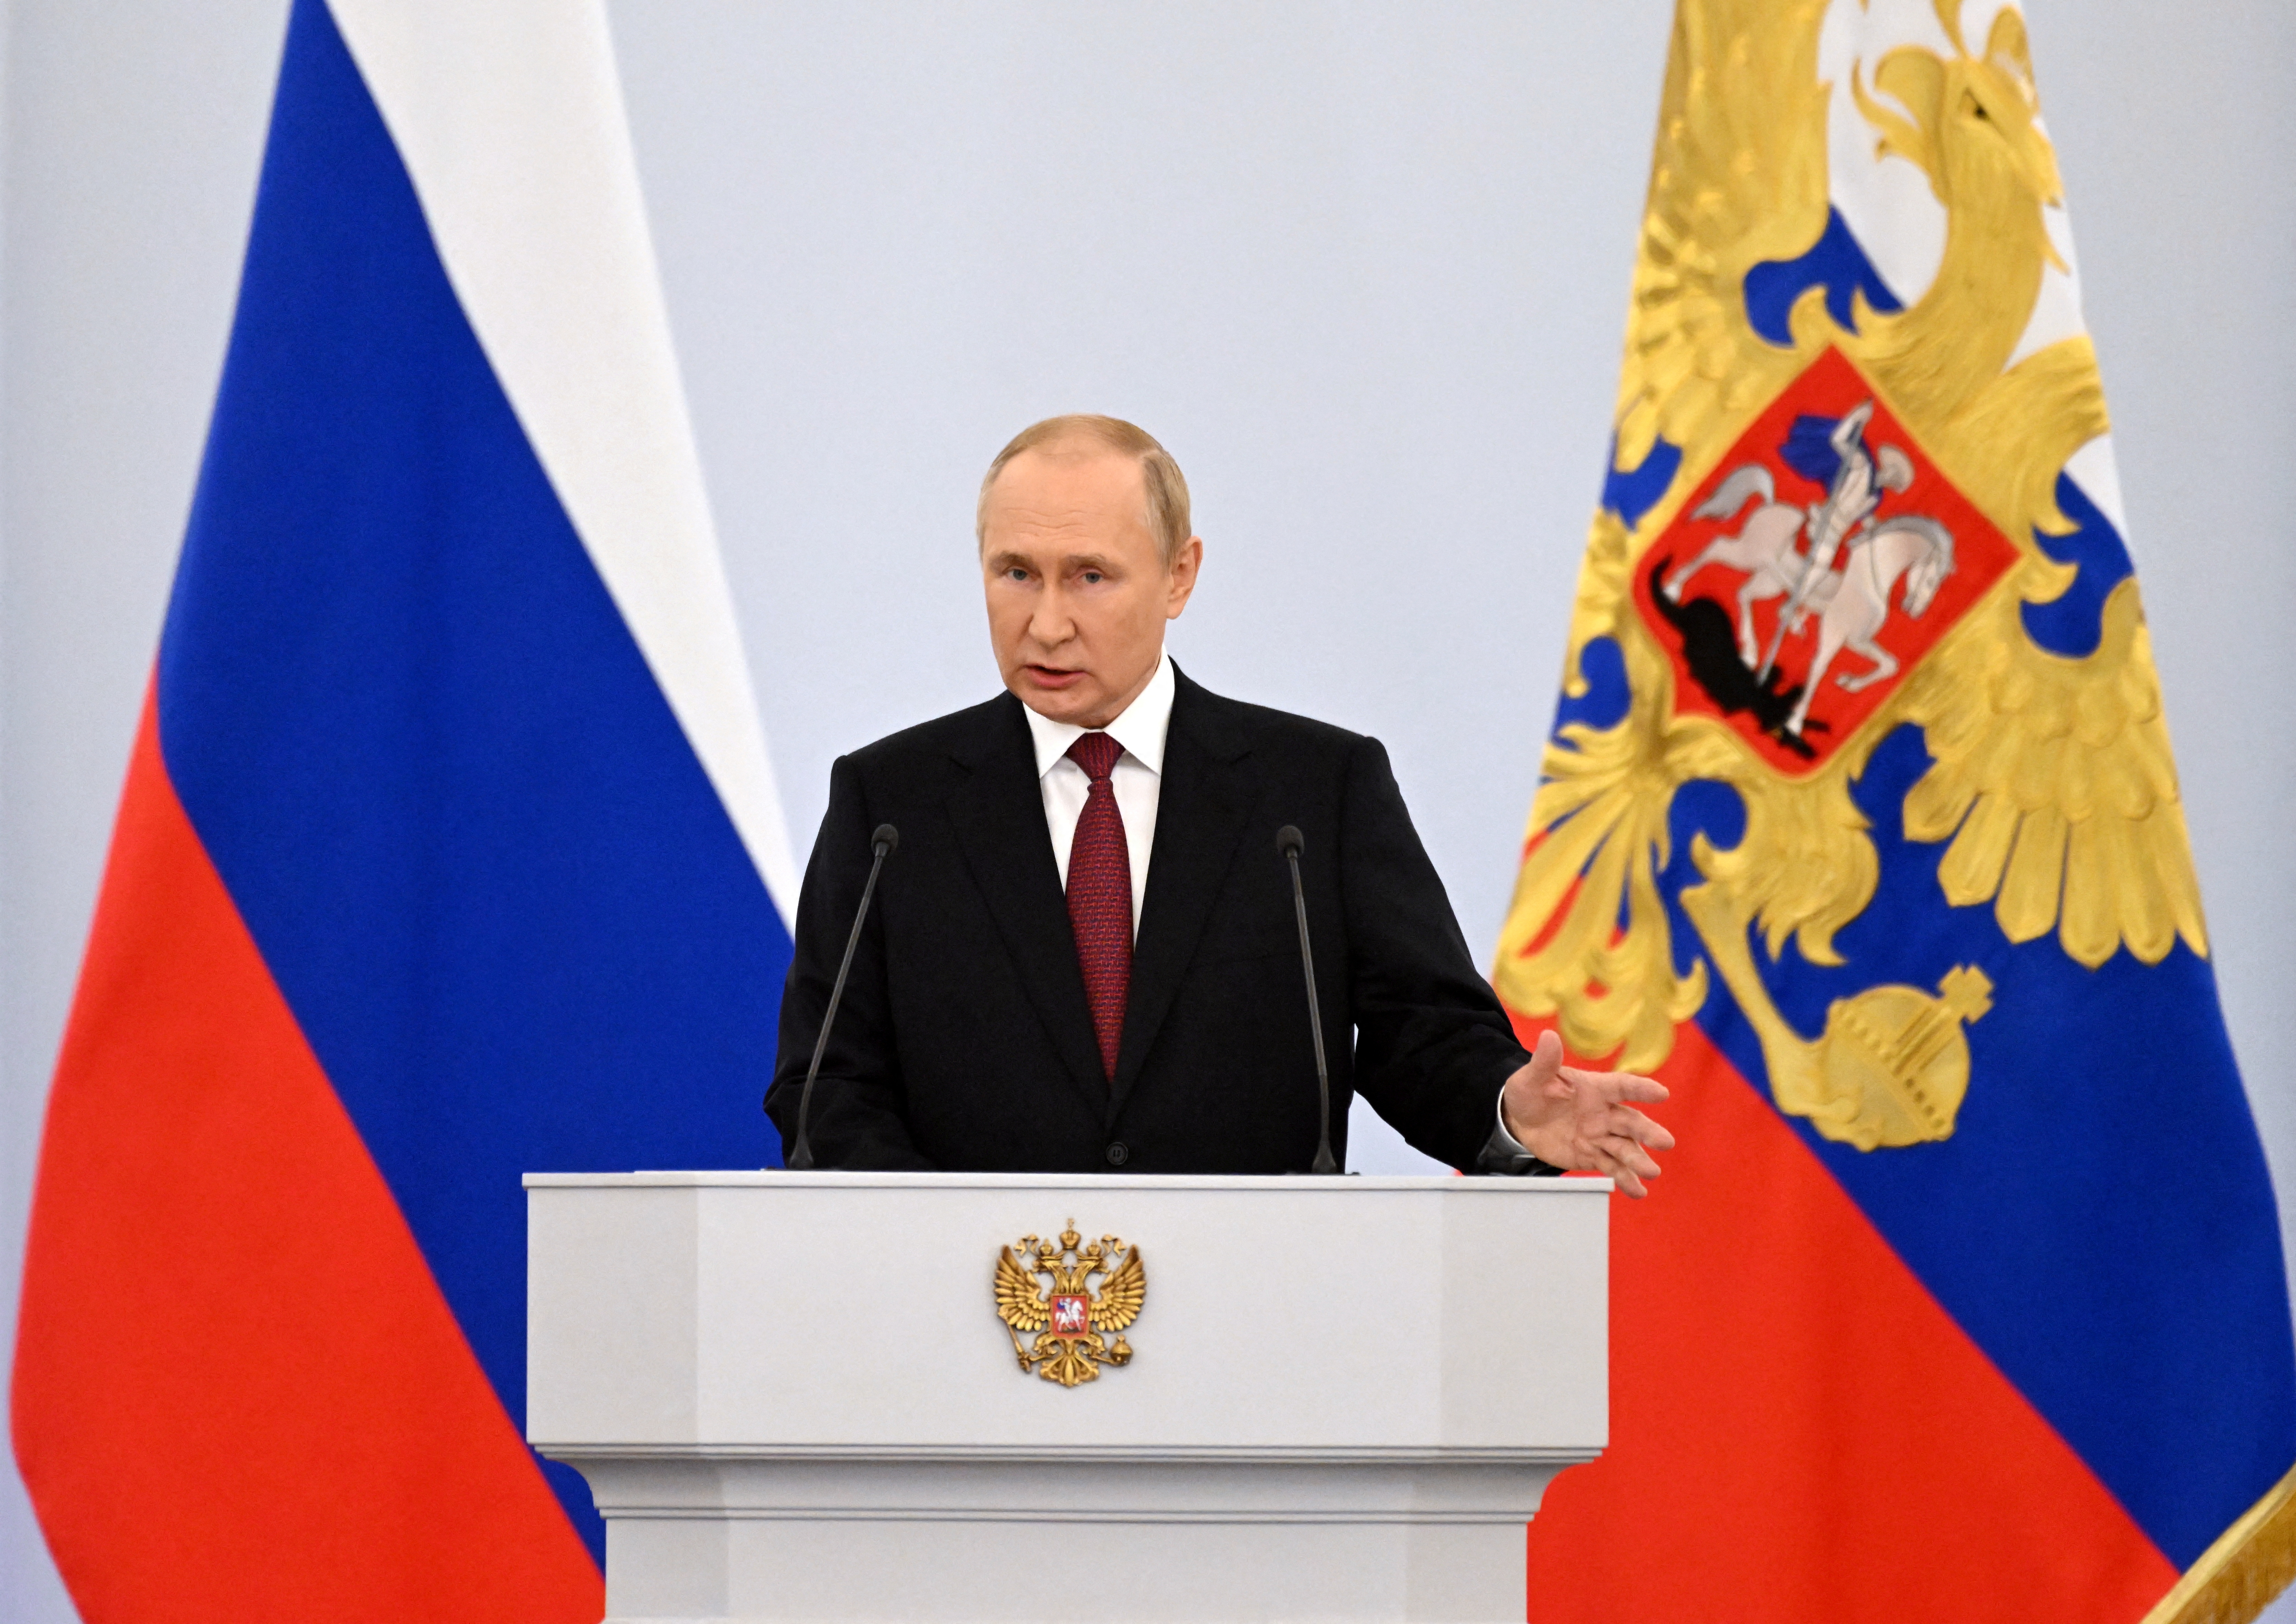 El presidente ruso, Vladimir Putin, pronuncia un discurso durante una ceremonia para declarar la anexión de los territorios ocupados por Rusia de cuatro regiones ucranianas de Donetsk, Luhansk, Kherson y Zaporizhzhia